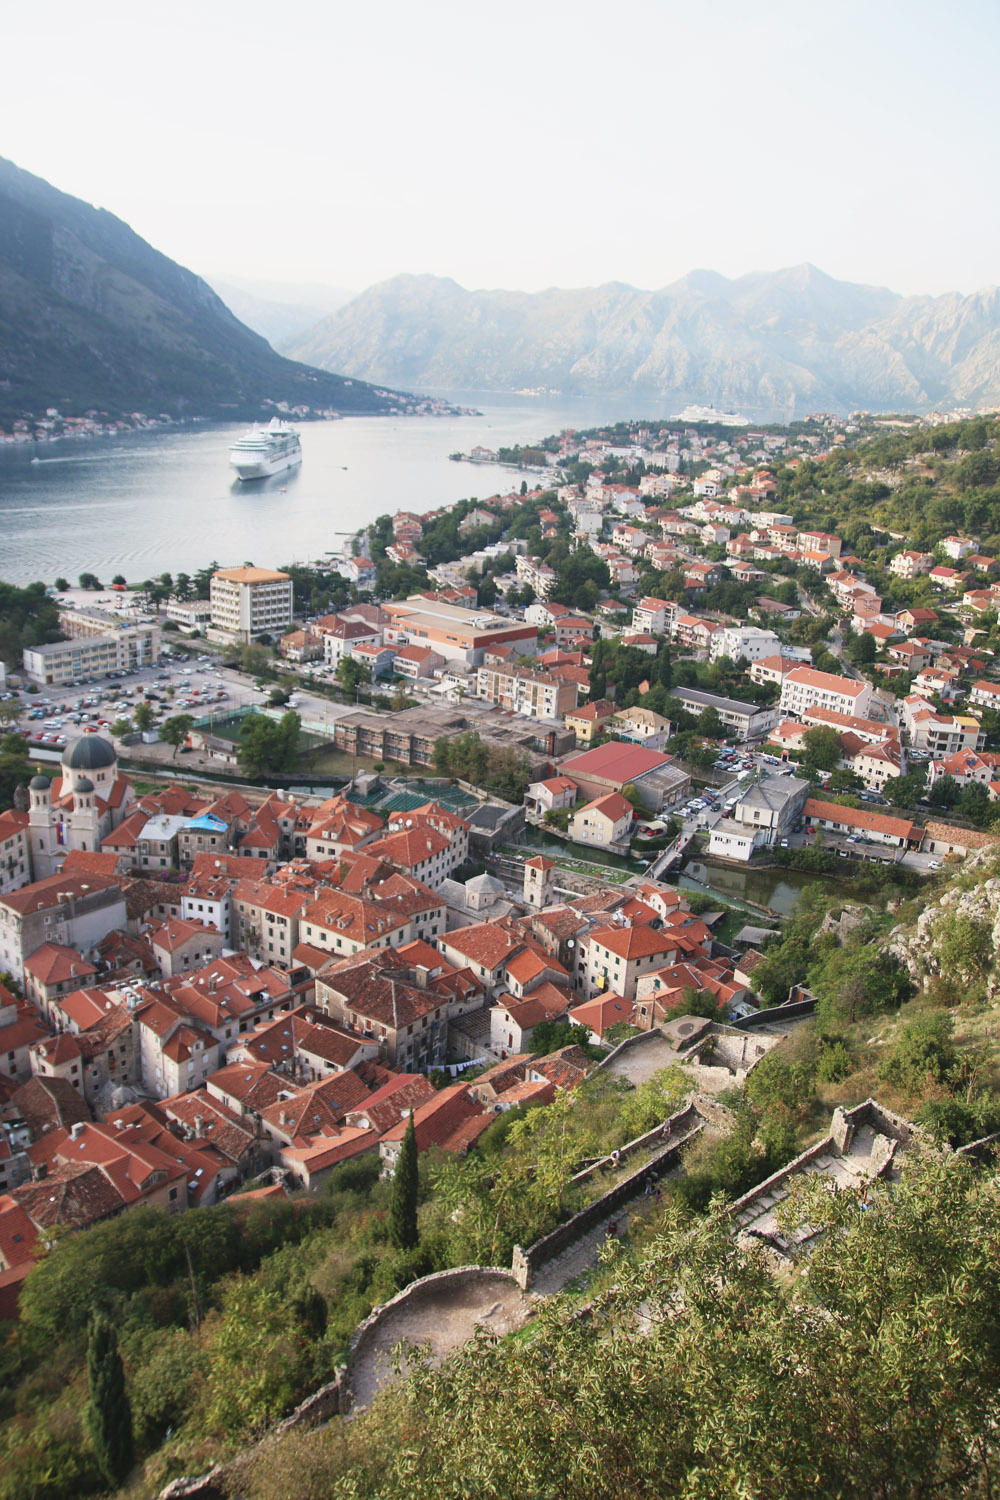 Kotor Old Walls, Montenegro